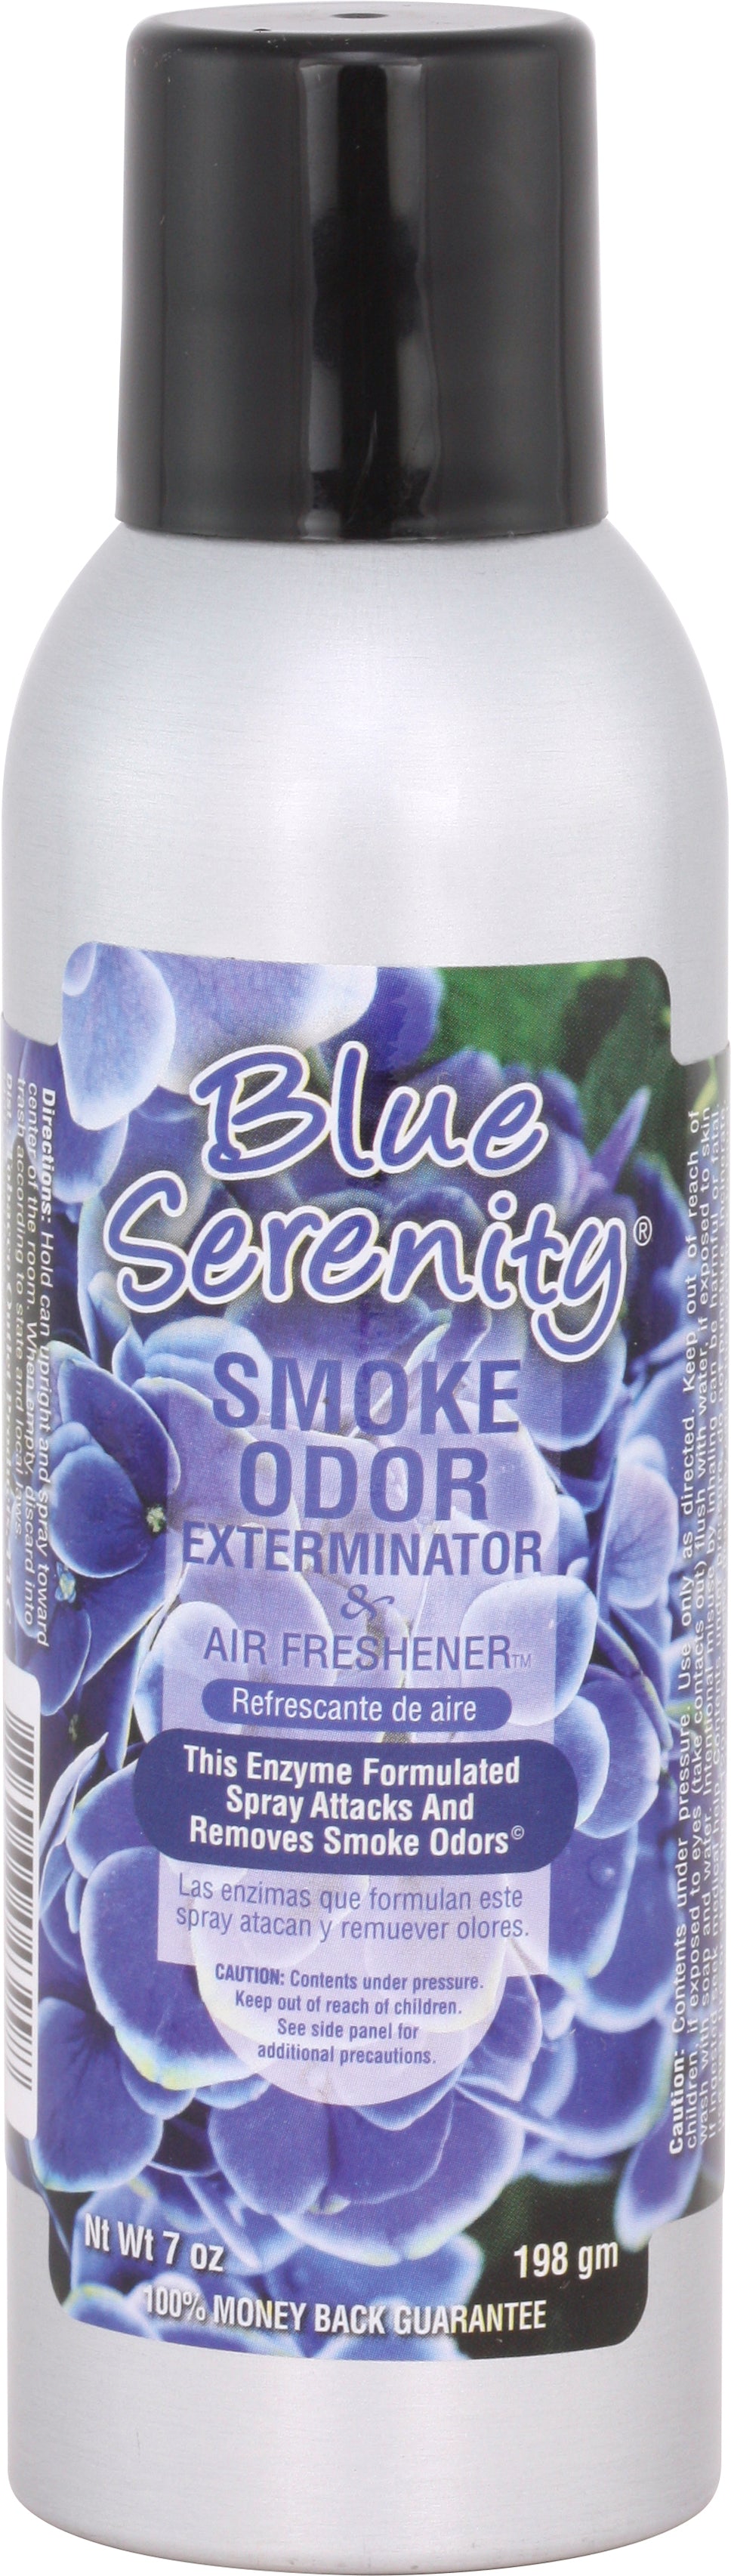 Smoke Odor 7 Oz. Spray: Blue Serenity